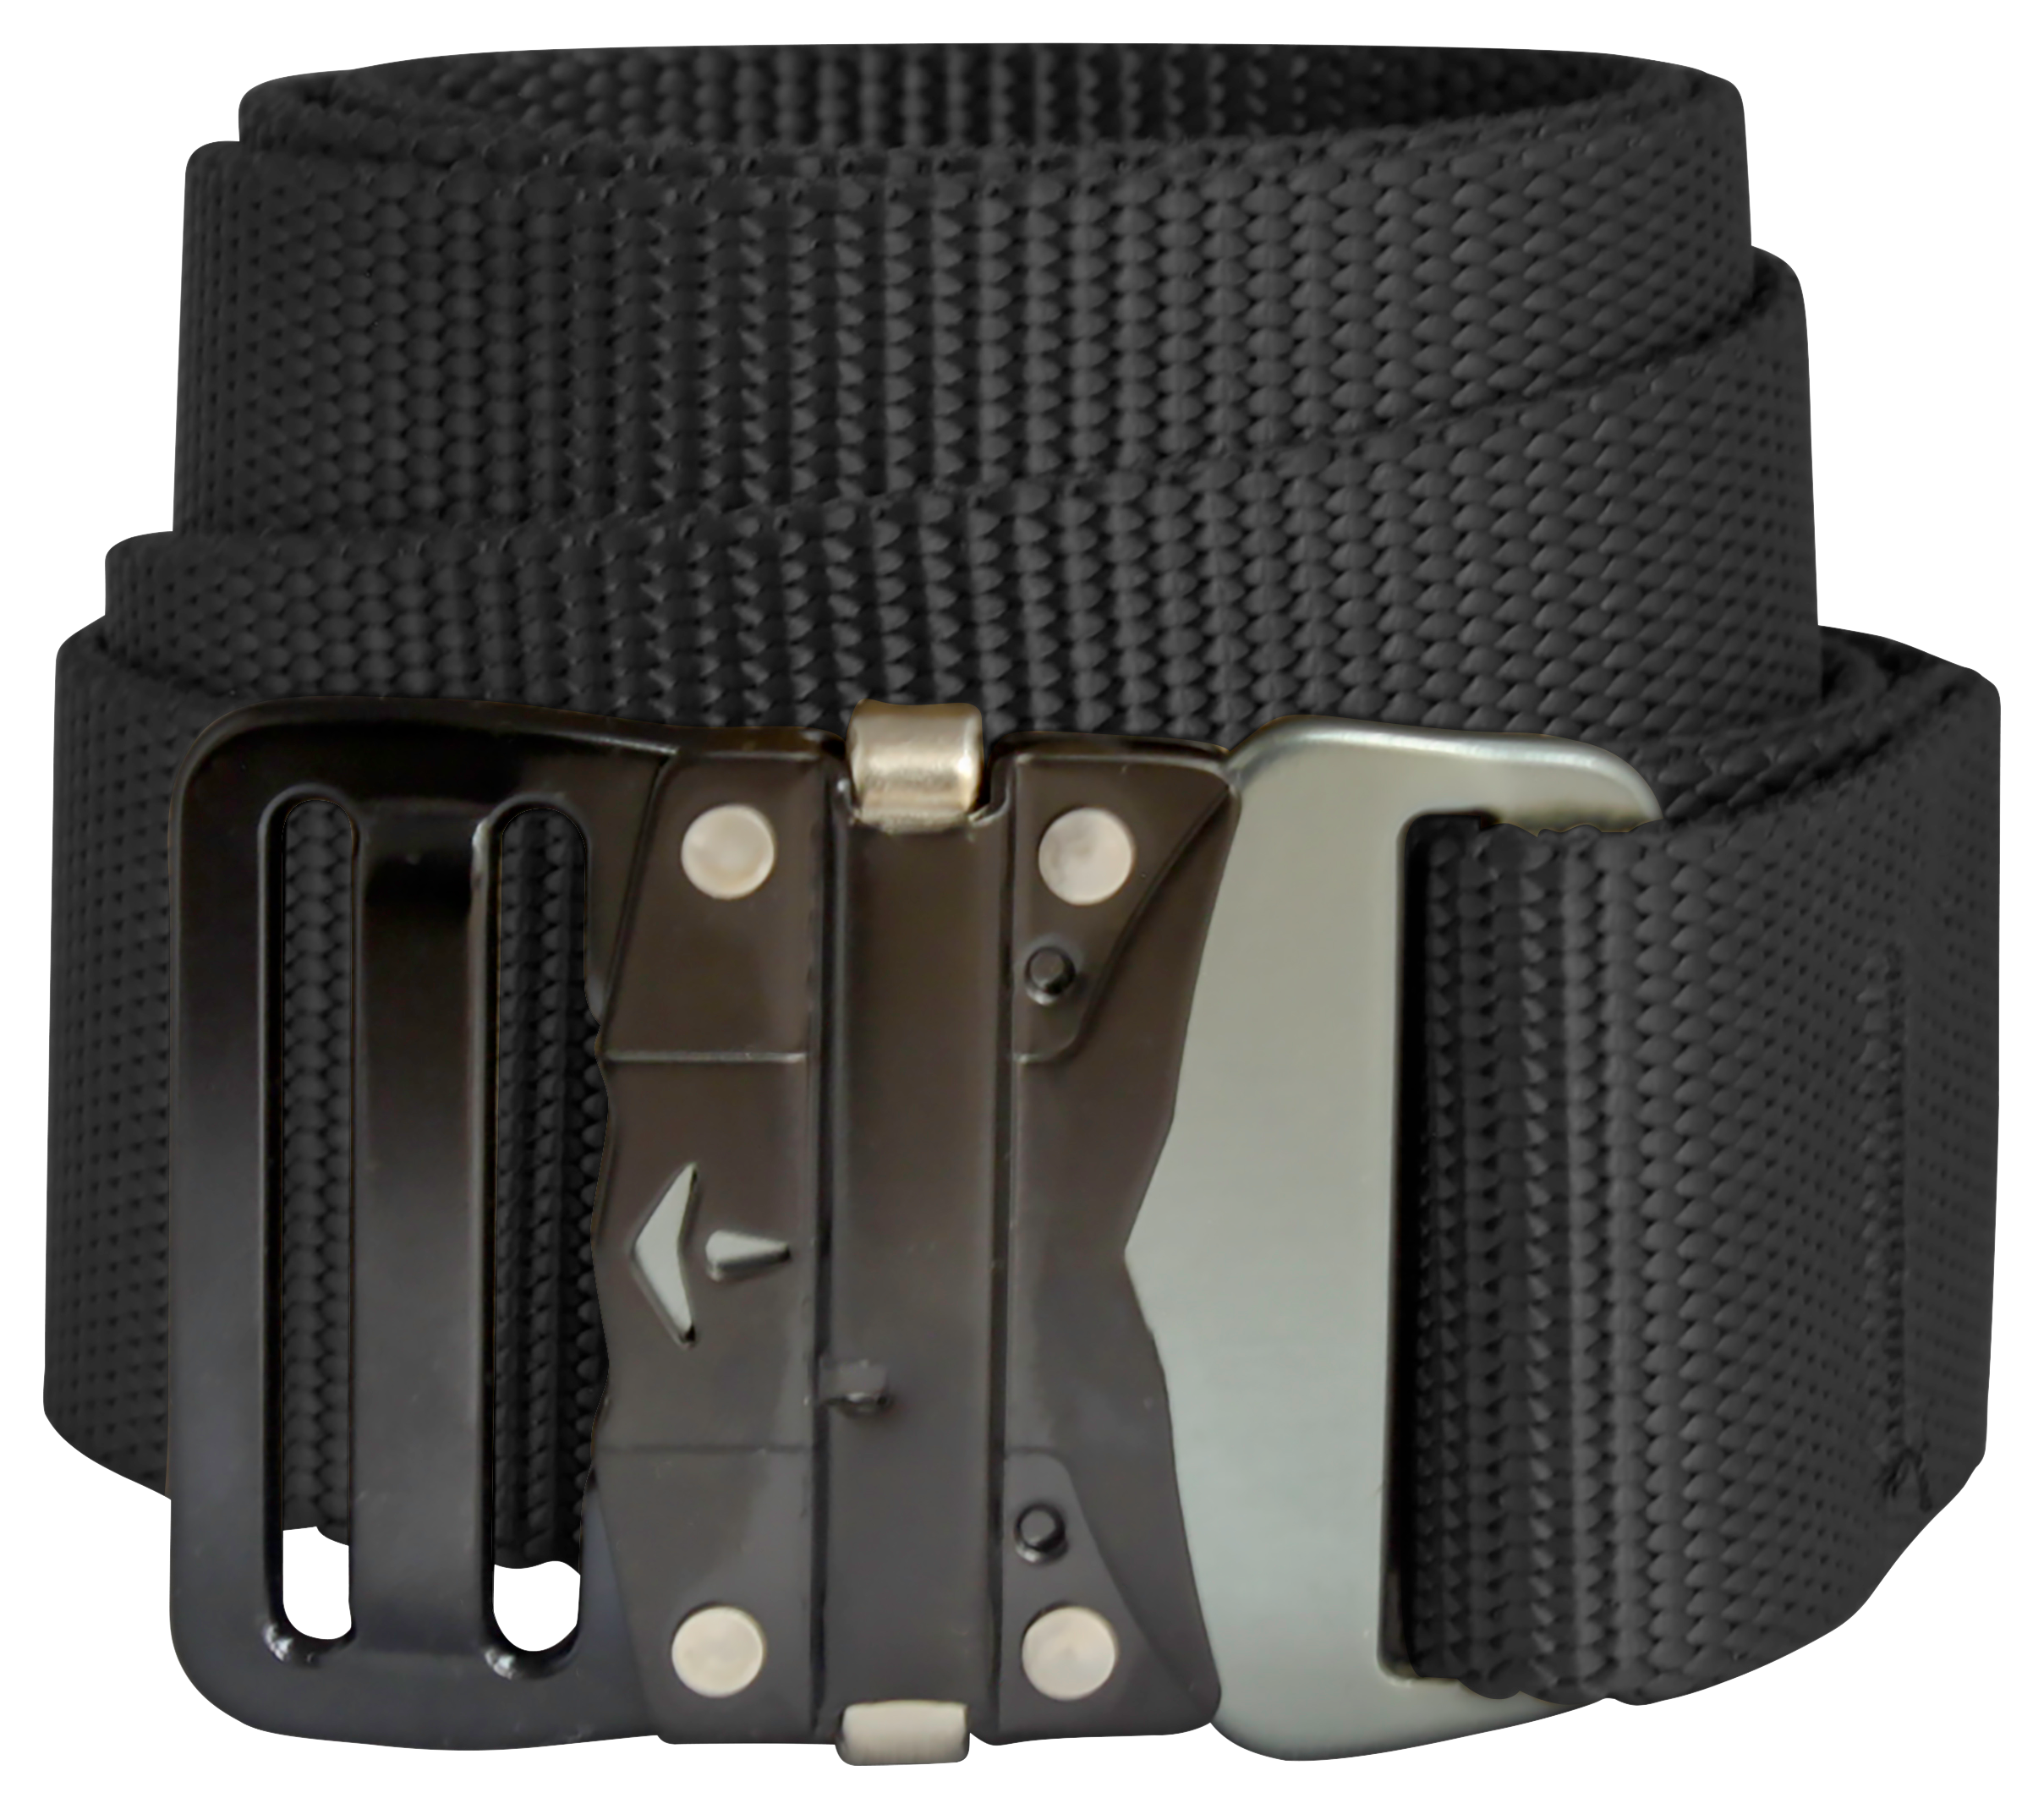 Bison Designs 38mm LoPro Buckle Belt for Men - Black - L